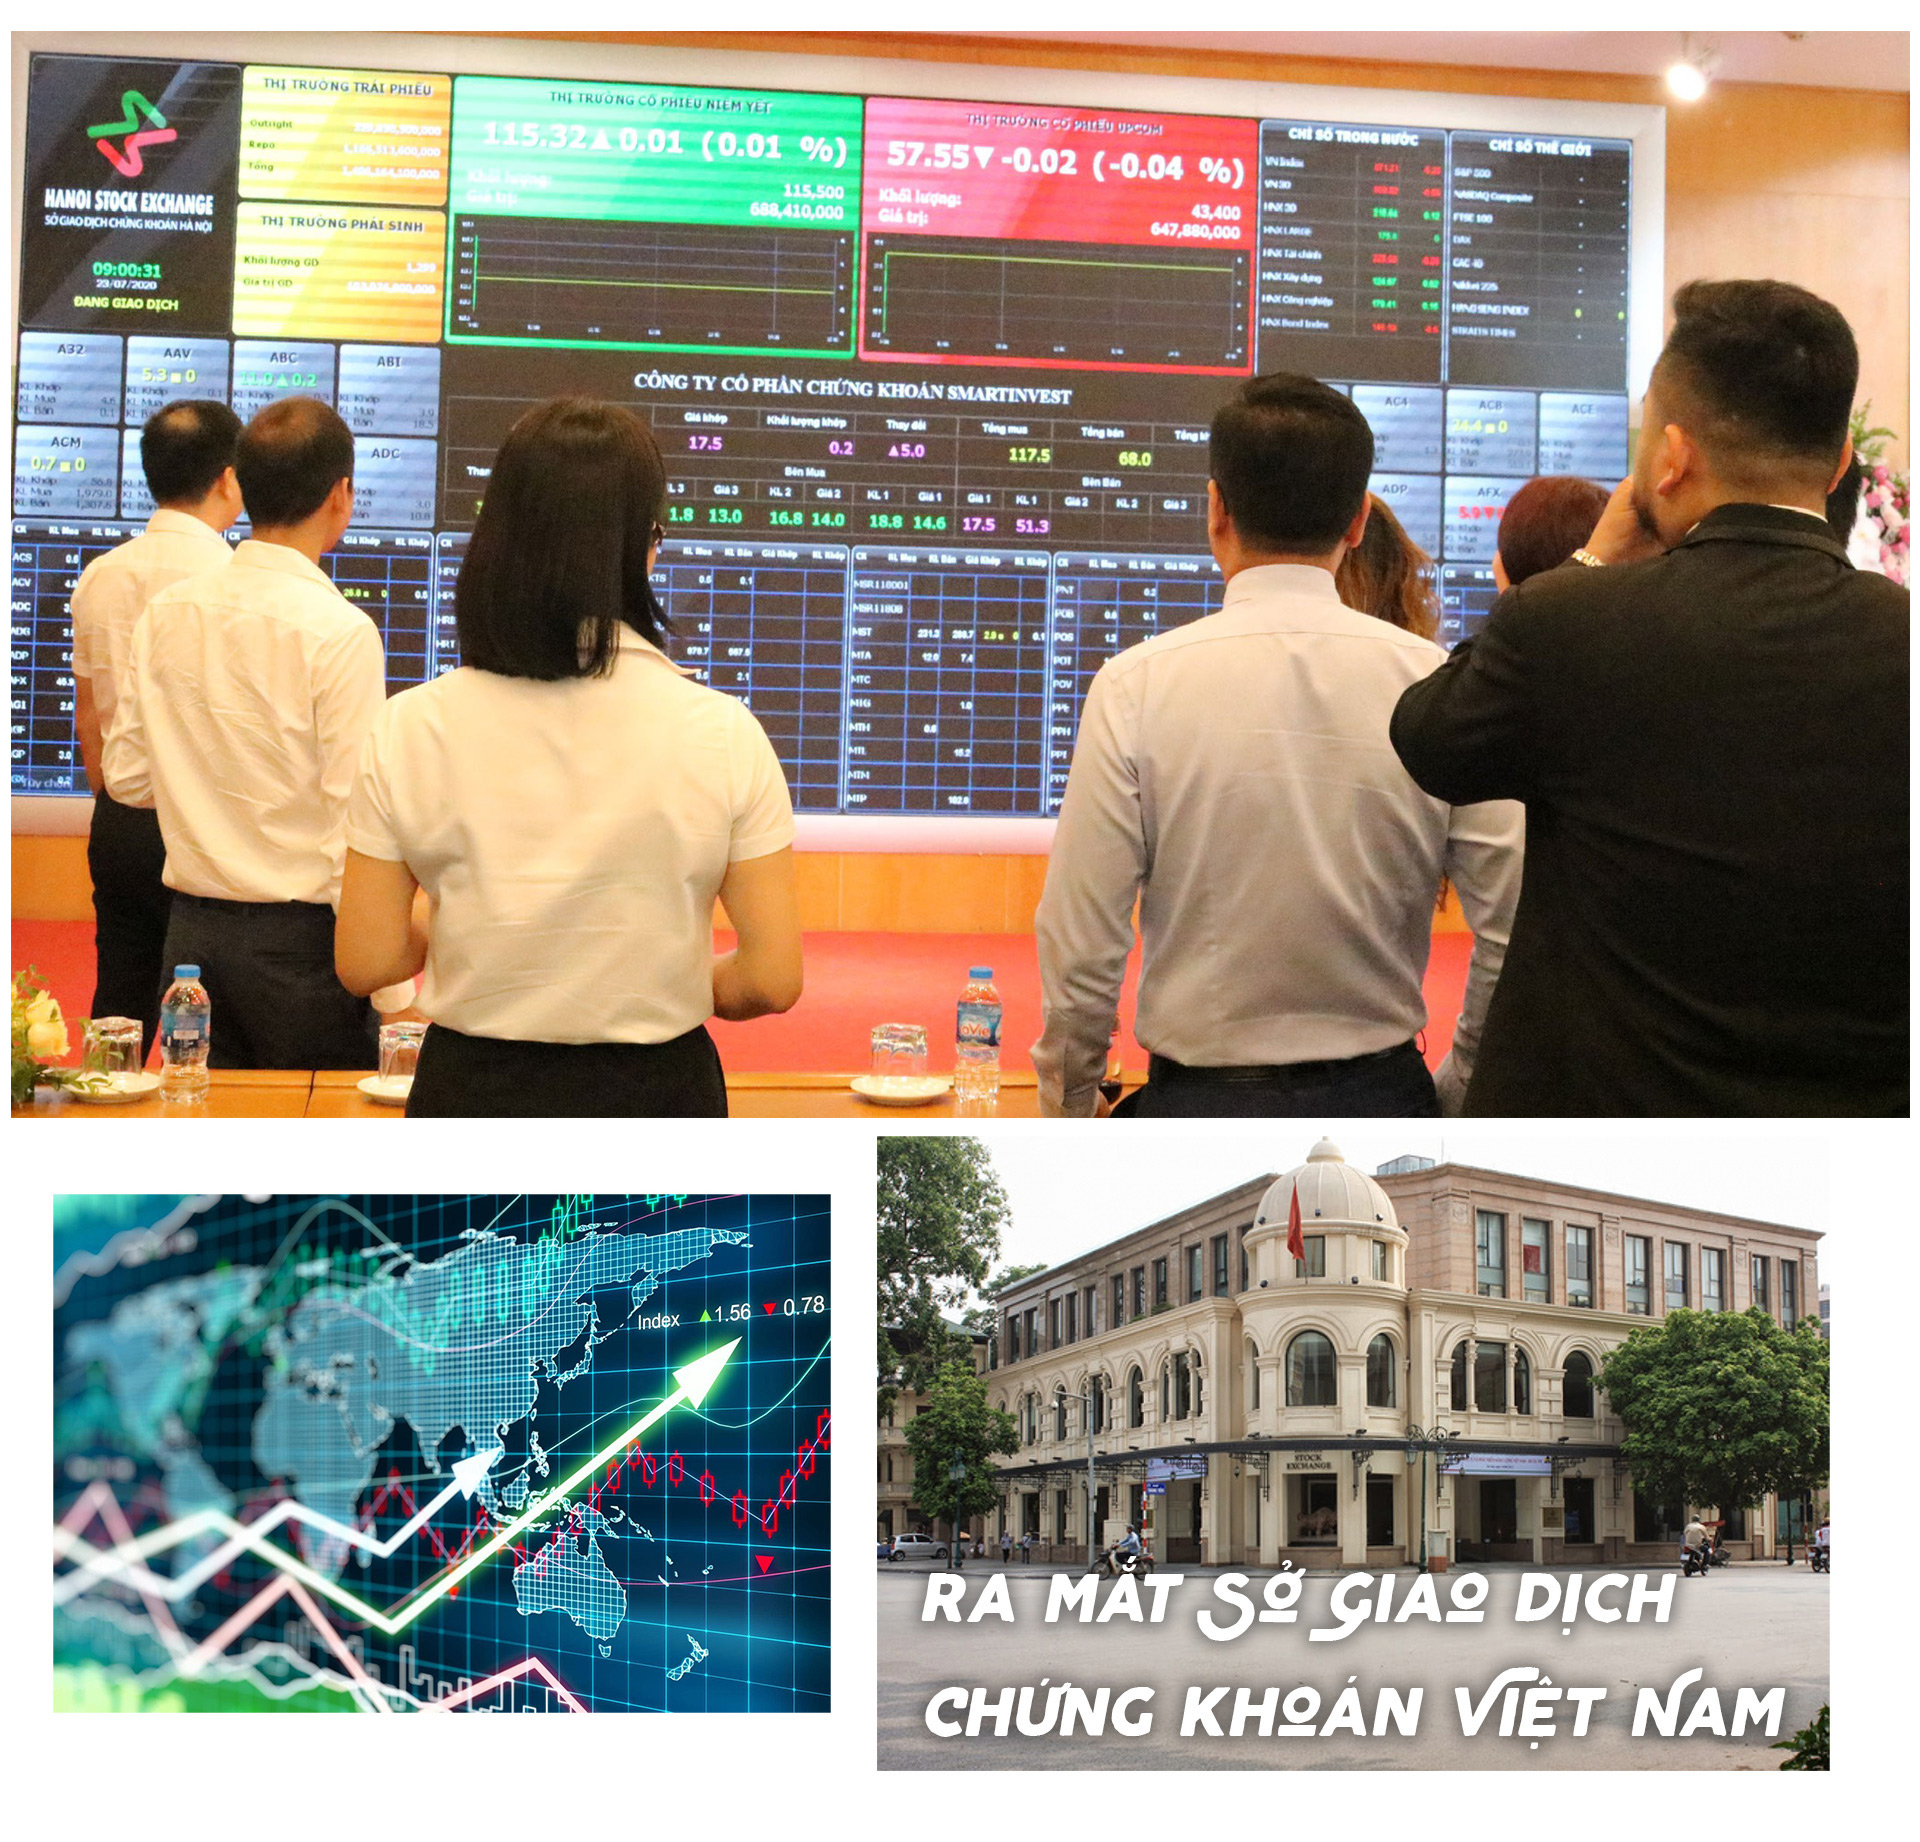 Hơn 4 triệu tài khoản đầu tư chứng khoán tại Việt Nam và những dấu ấn khó quên của thị trường - 19